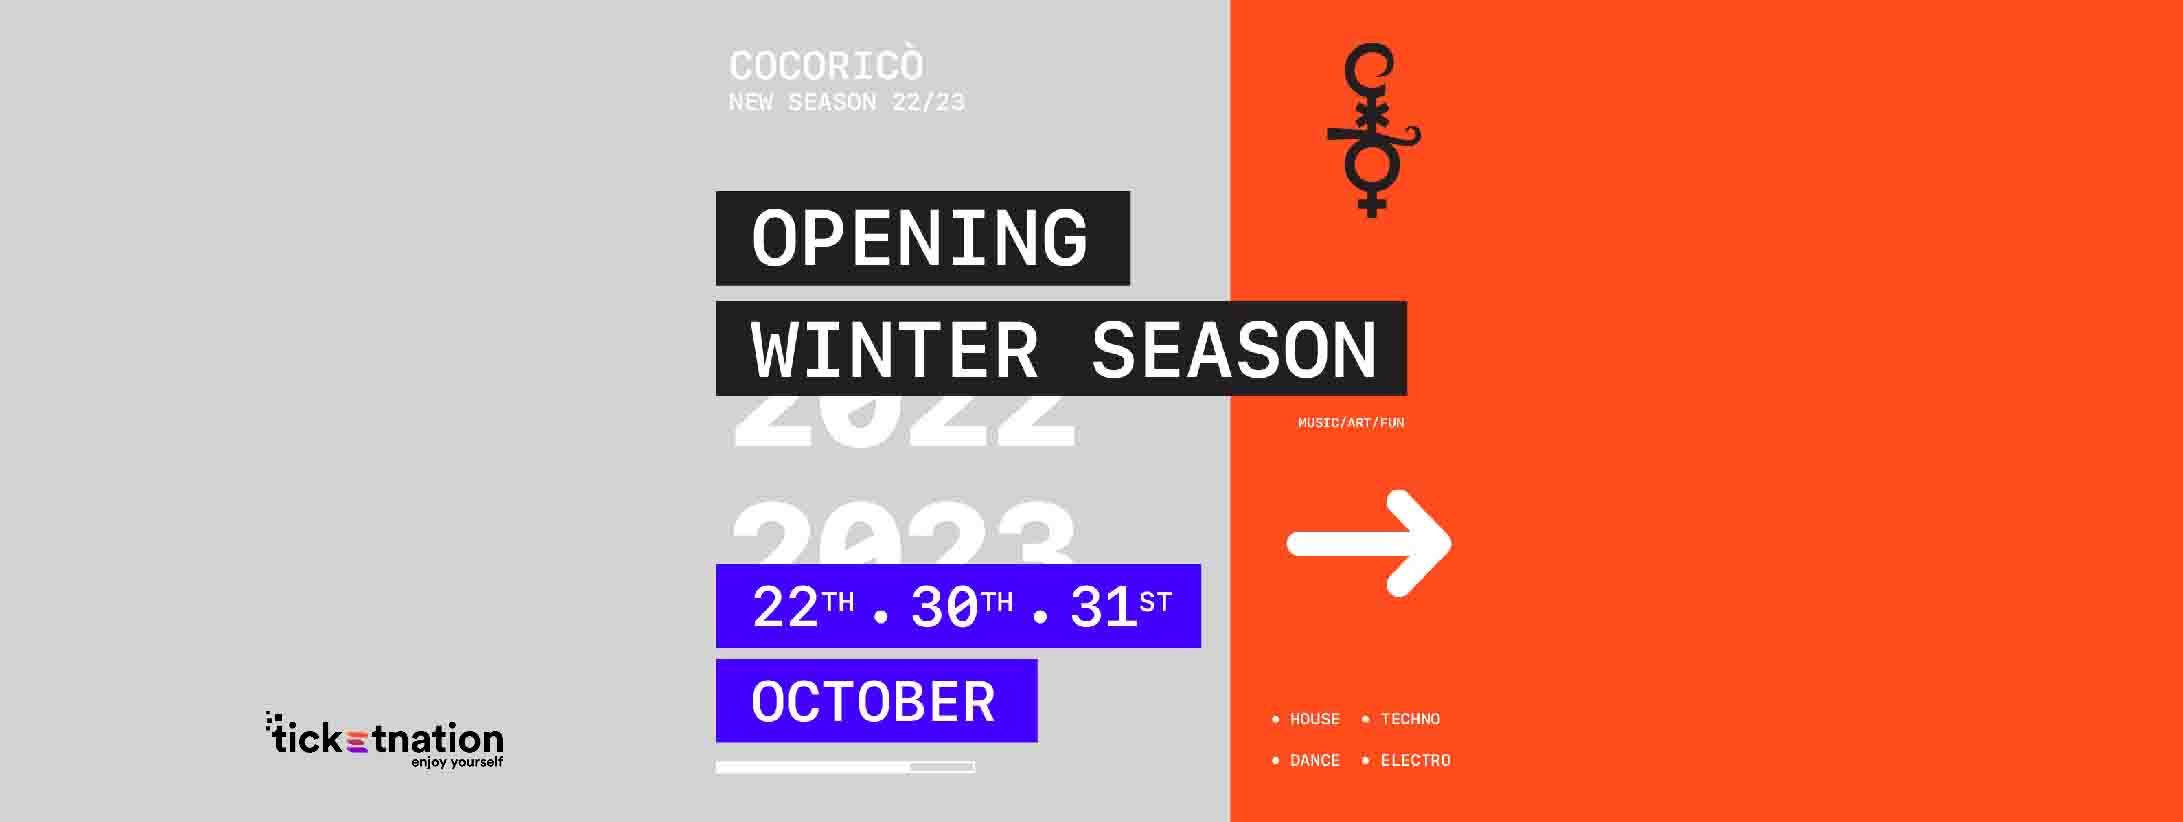 cocorico-opening-22-ott-2022